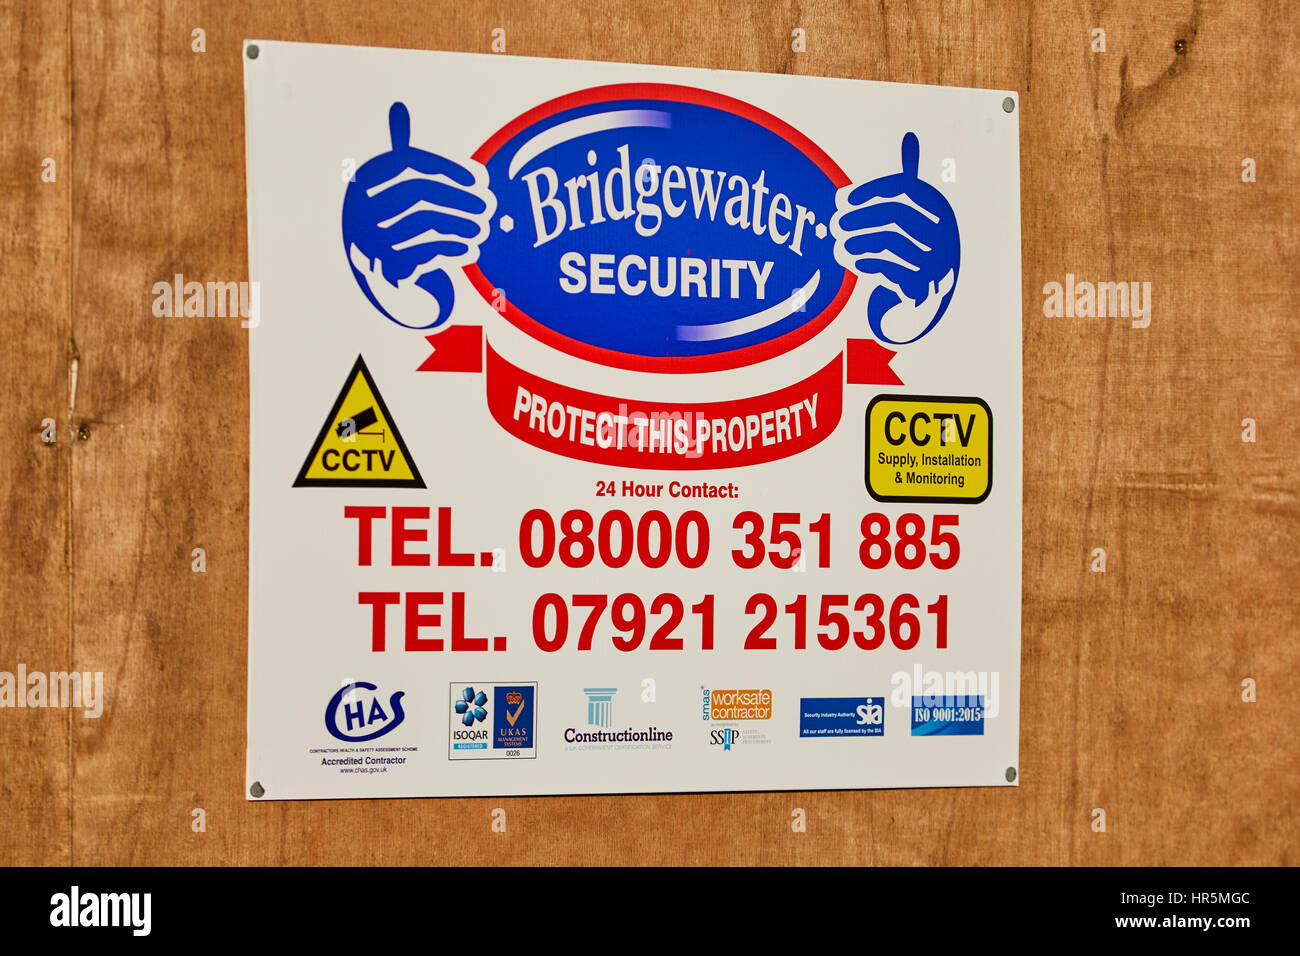 Salford basierend, Bridgewater Sicherheit Schilder auf eine Entwicklung in Manchester, England, UK Stockfoto